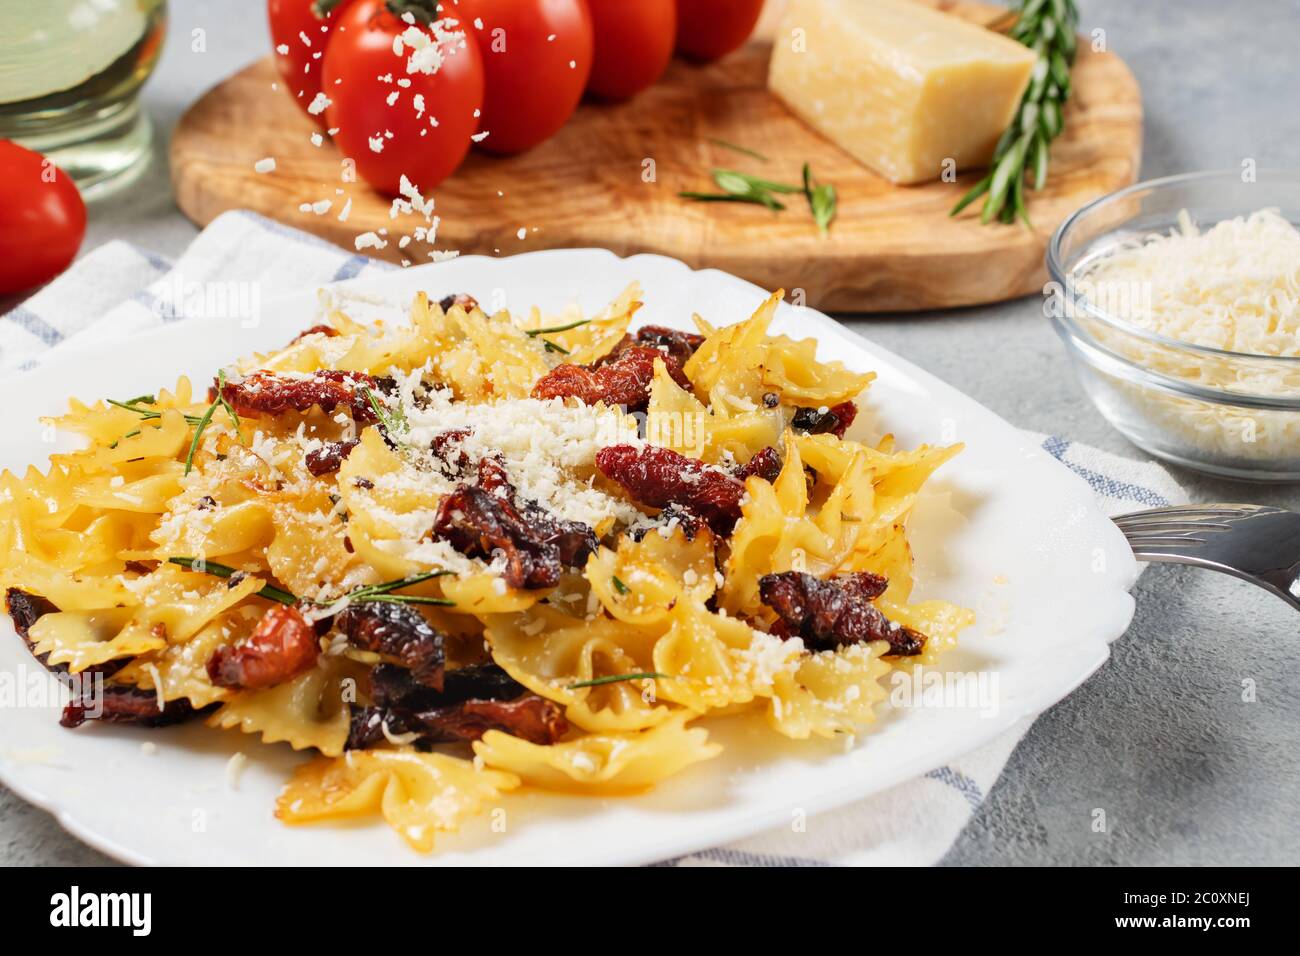 Saupoudrer les pâtes au parmesan avec des tomates séchées dans une assiette blanche sur la table. Cuisine italienne, ingrédients et plat fini. Banque D'Images